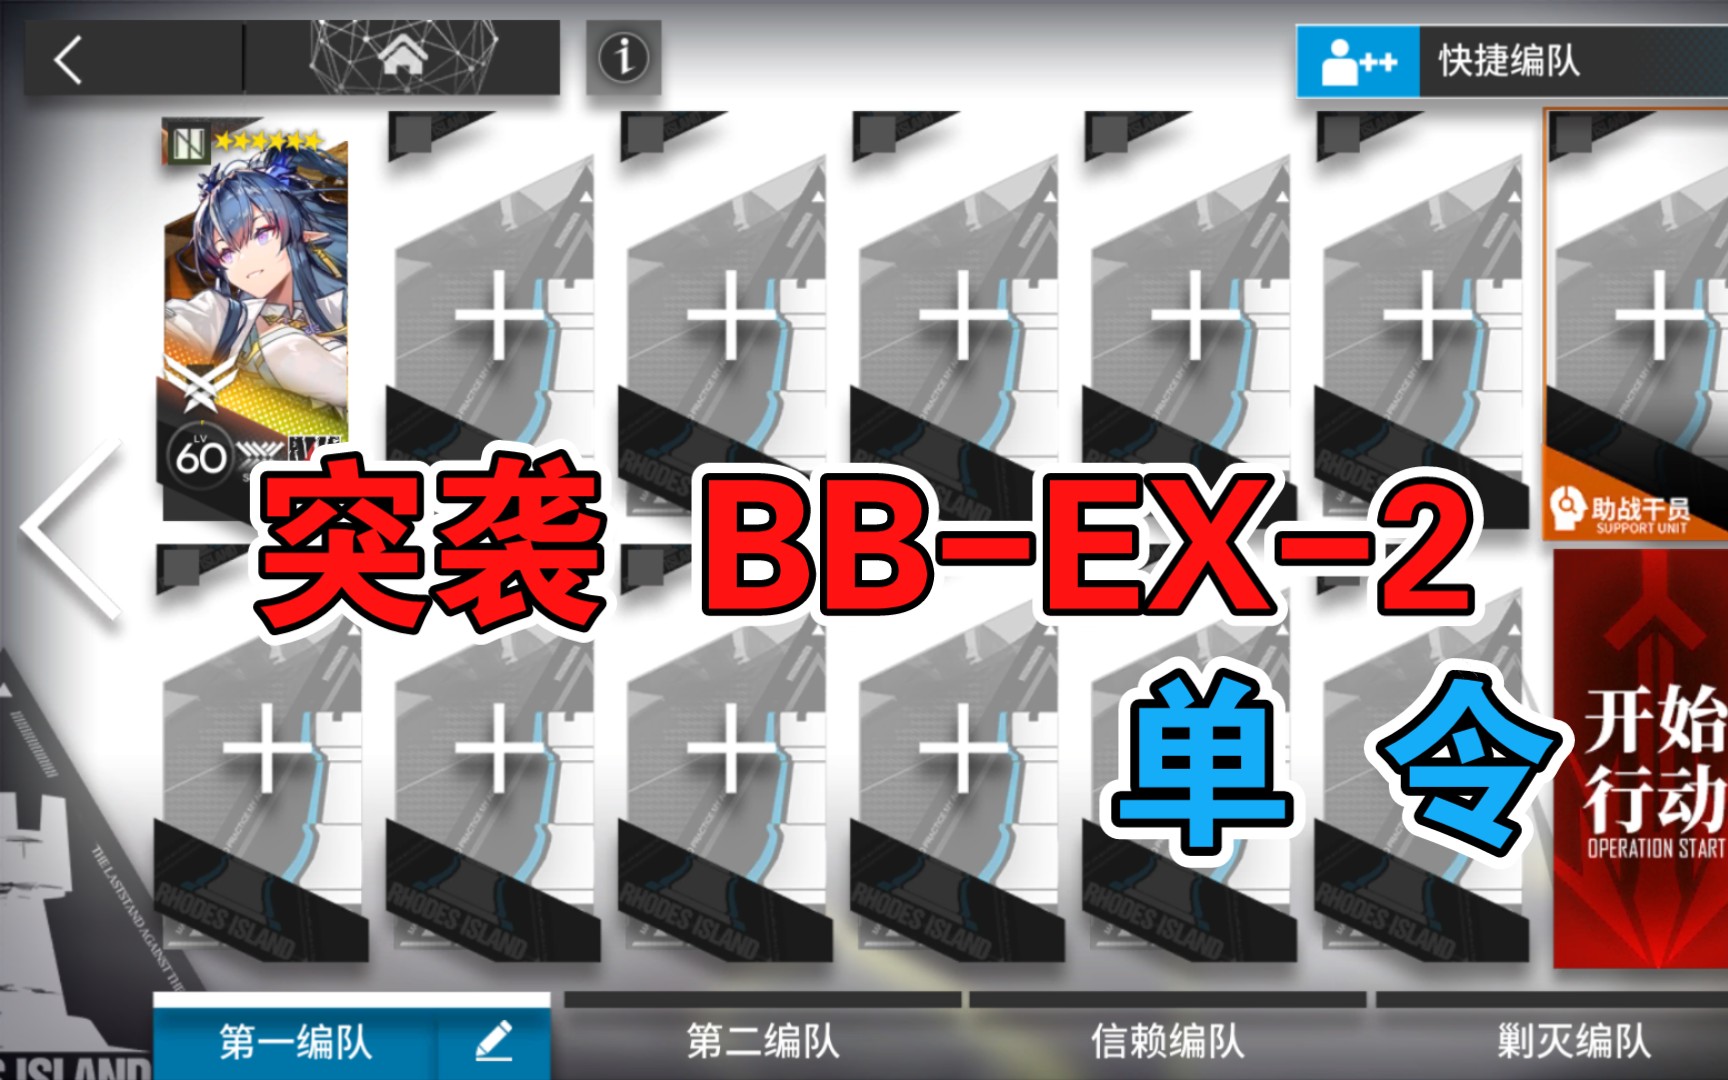 【明日方舟】 突袭 BB-EX-2 低配 令单人 巴别塔